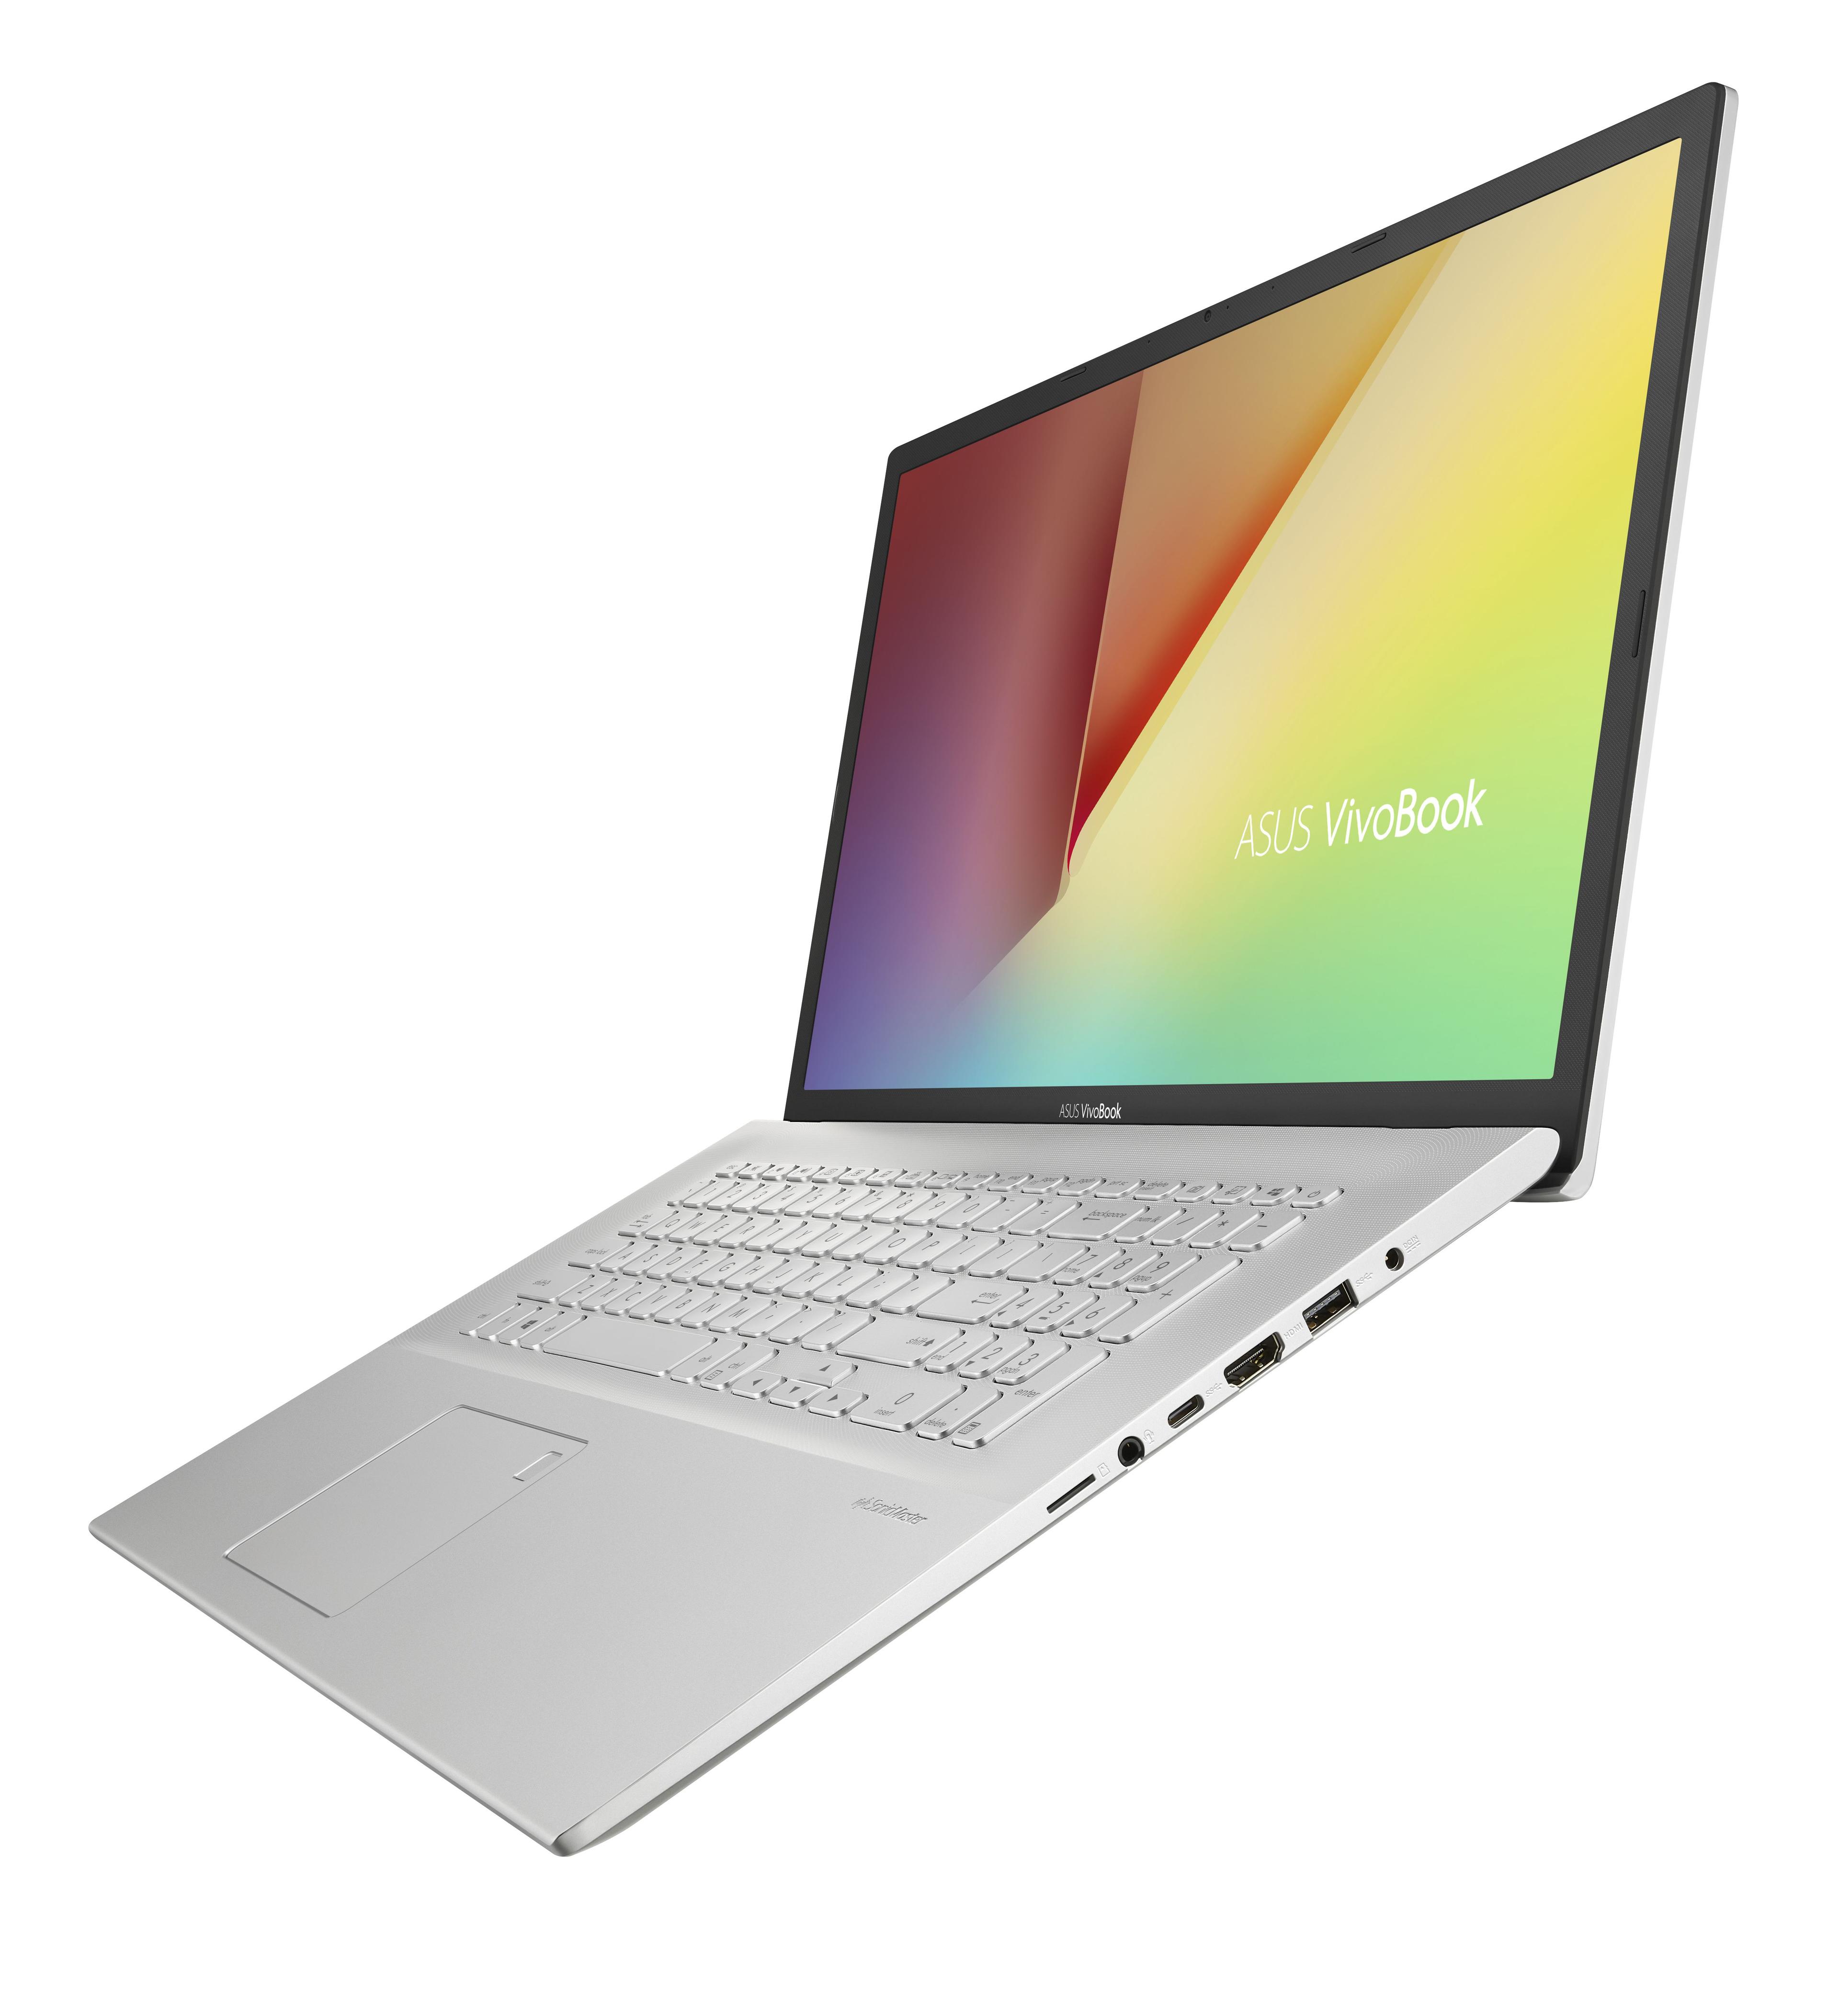 ASUS VivoBook 17 M712DA Notebook 43.9 cm (17.3") Full HD AMD Ryzen 3 8 GB DDR4-SDRAM 256 GB SSD Wi-Fi 5 (802.11ac) Windows 10 Home Silver (REPACK)